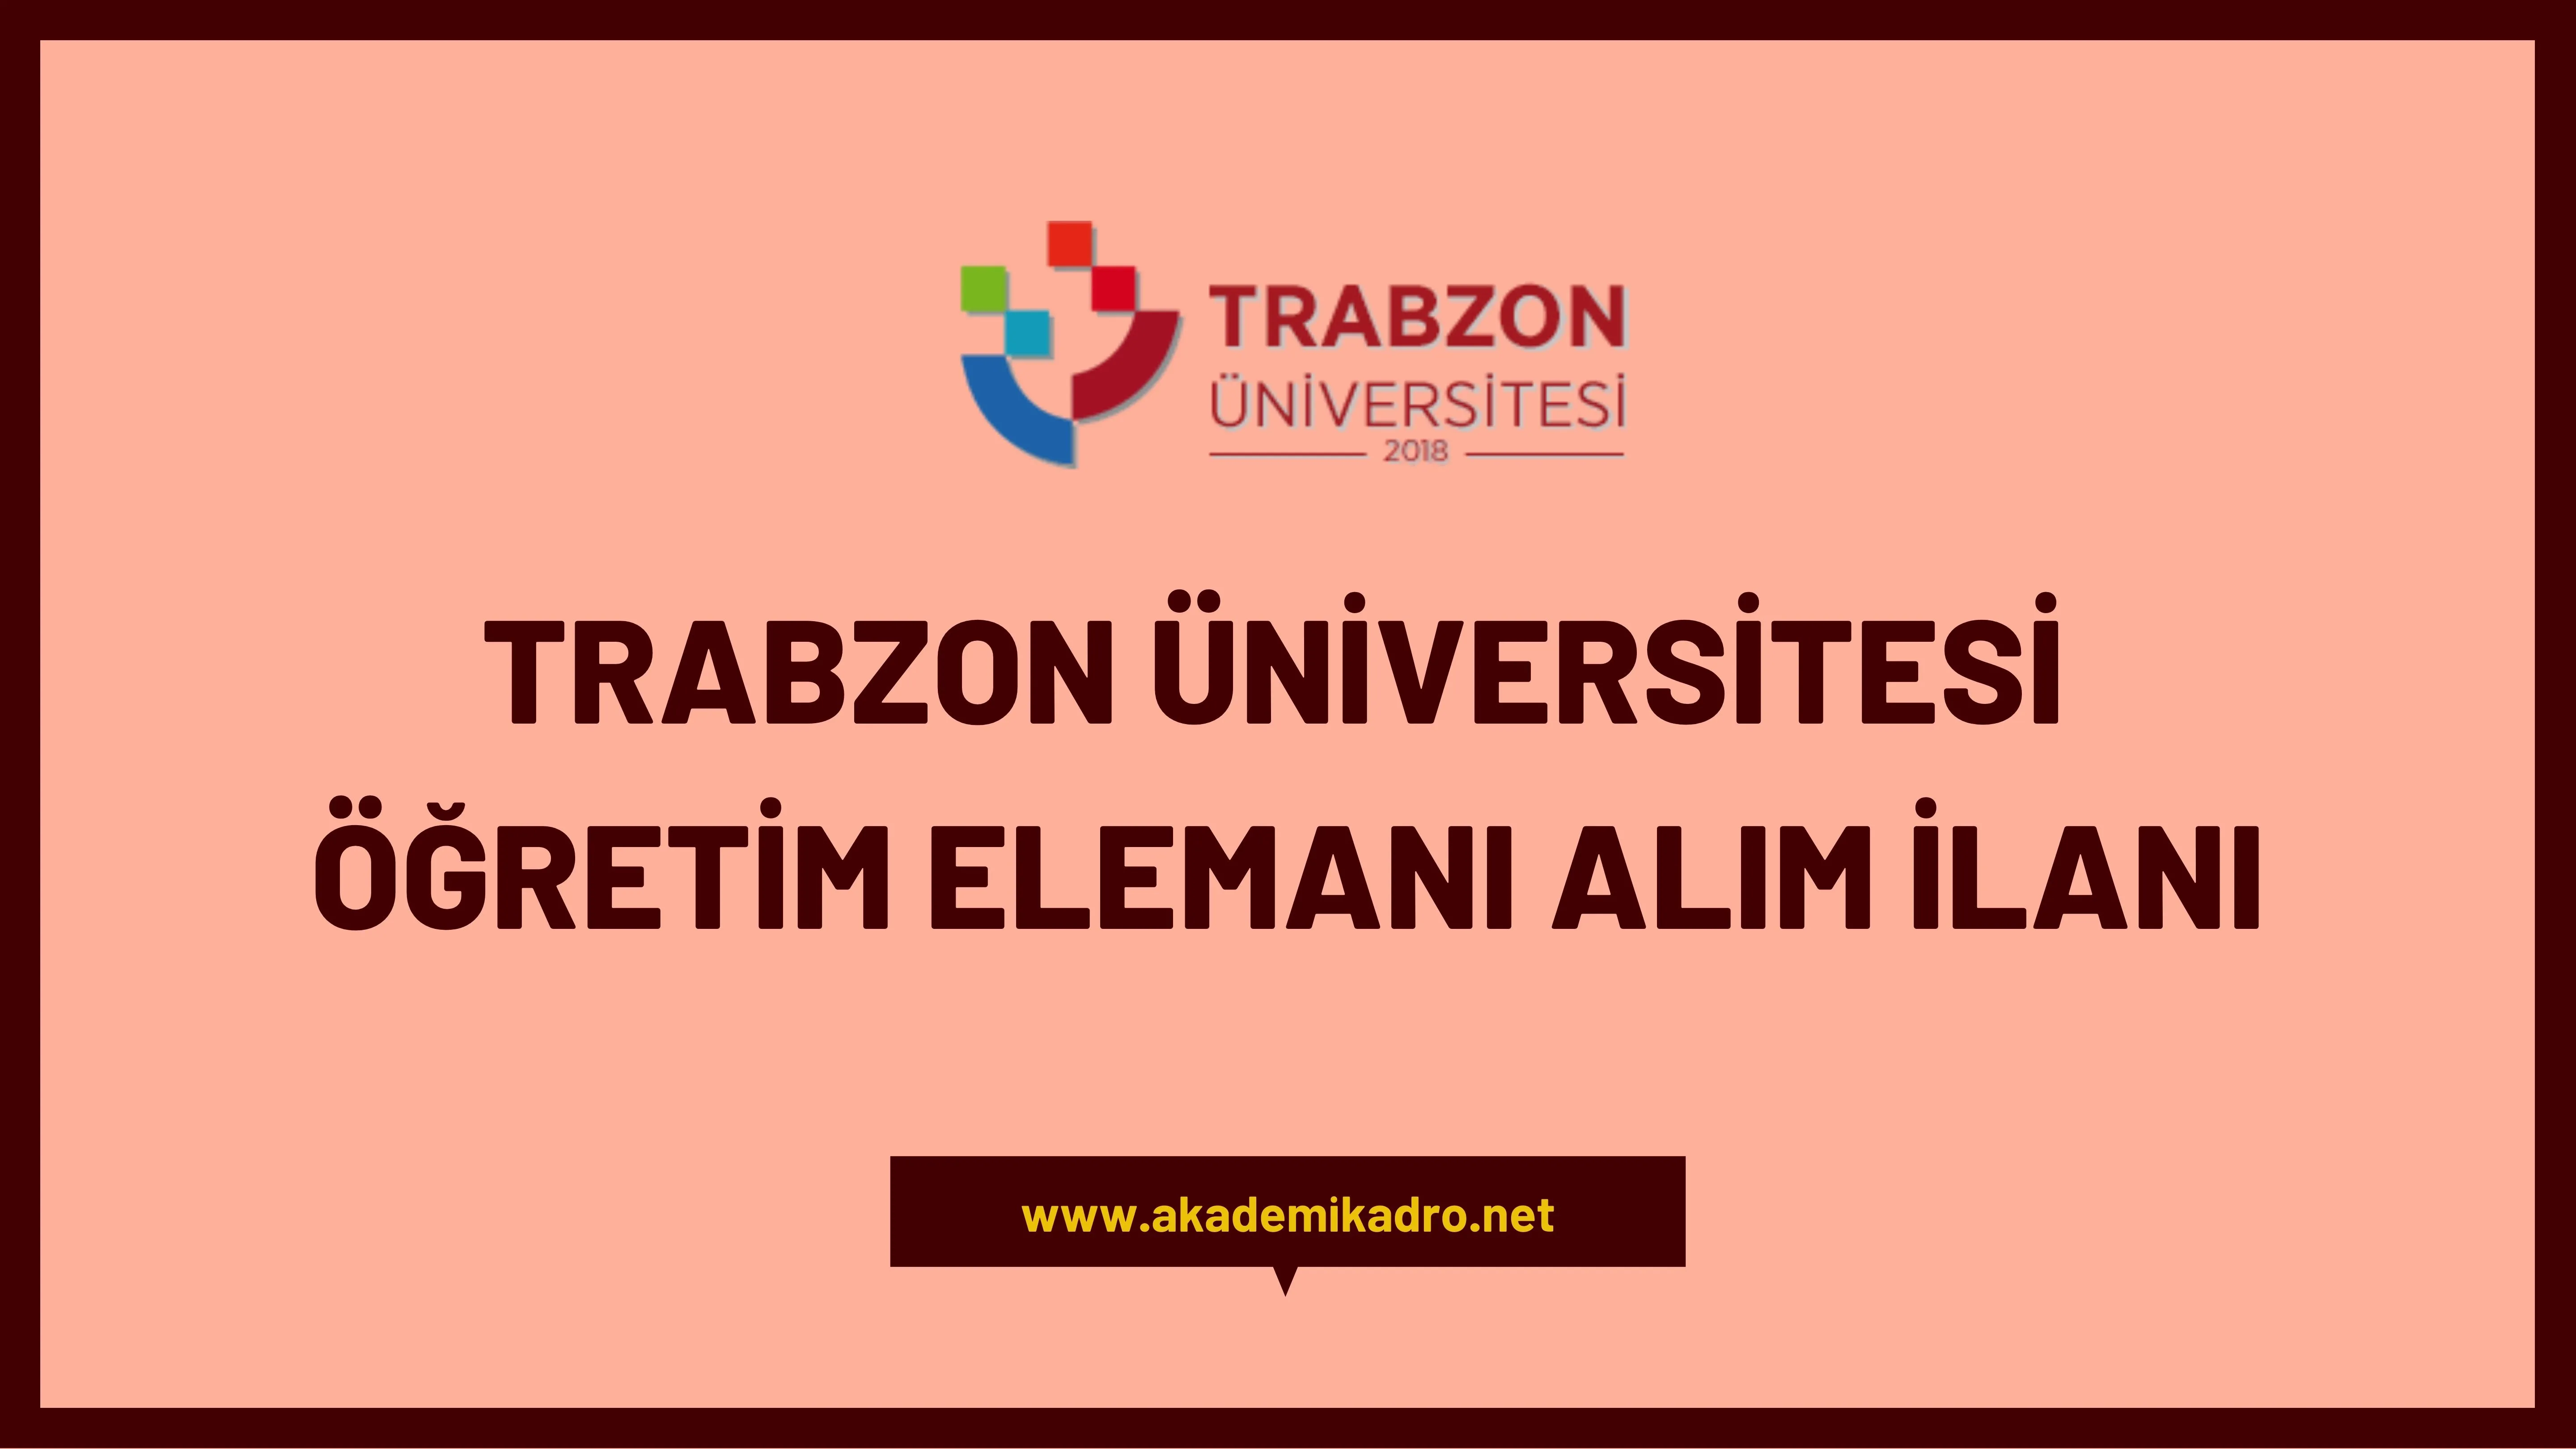 Trabzon Üniversitesi 19 Öğretim Görevlisi, 5 Araştırma görevlisi ve 18 öğretim üyesi alacaktır.